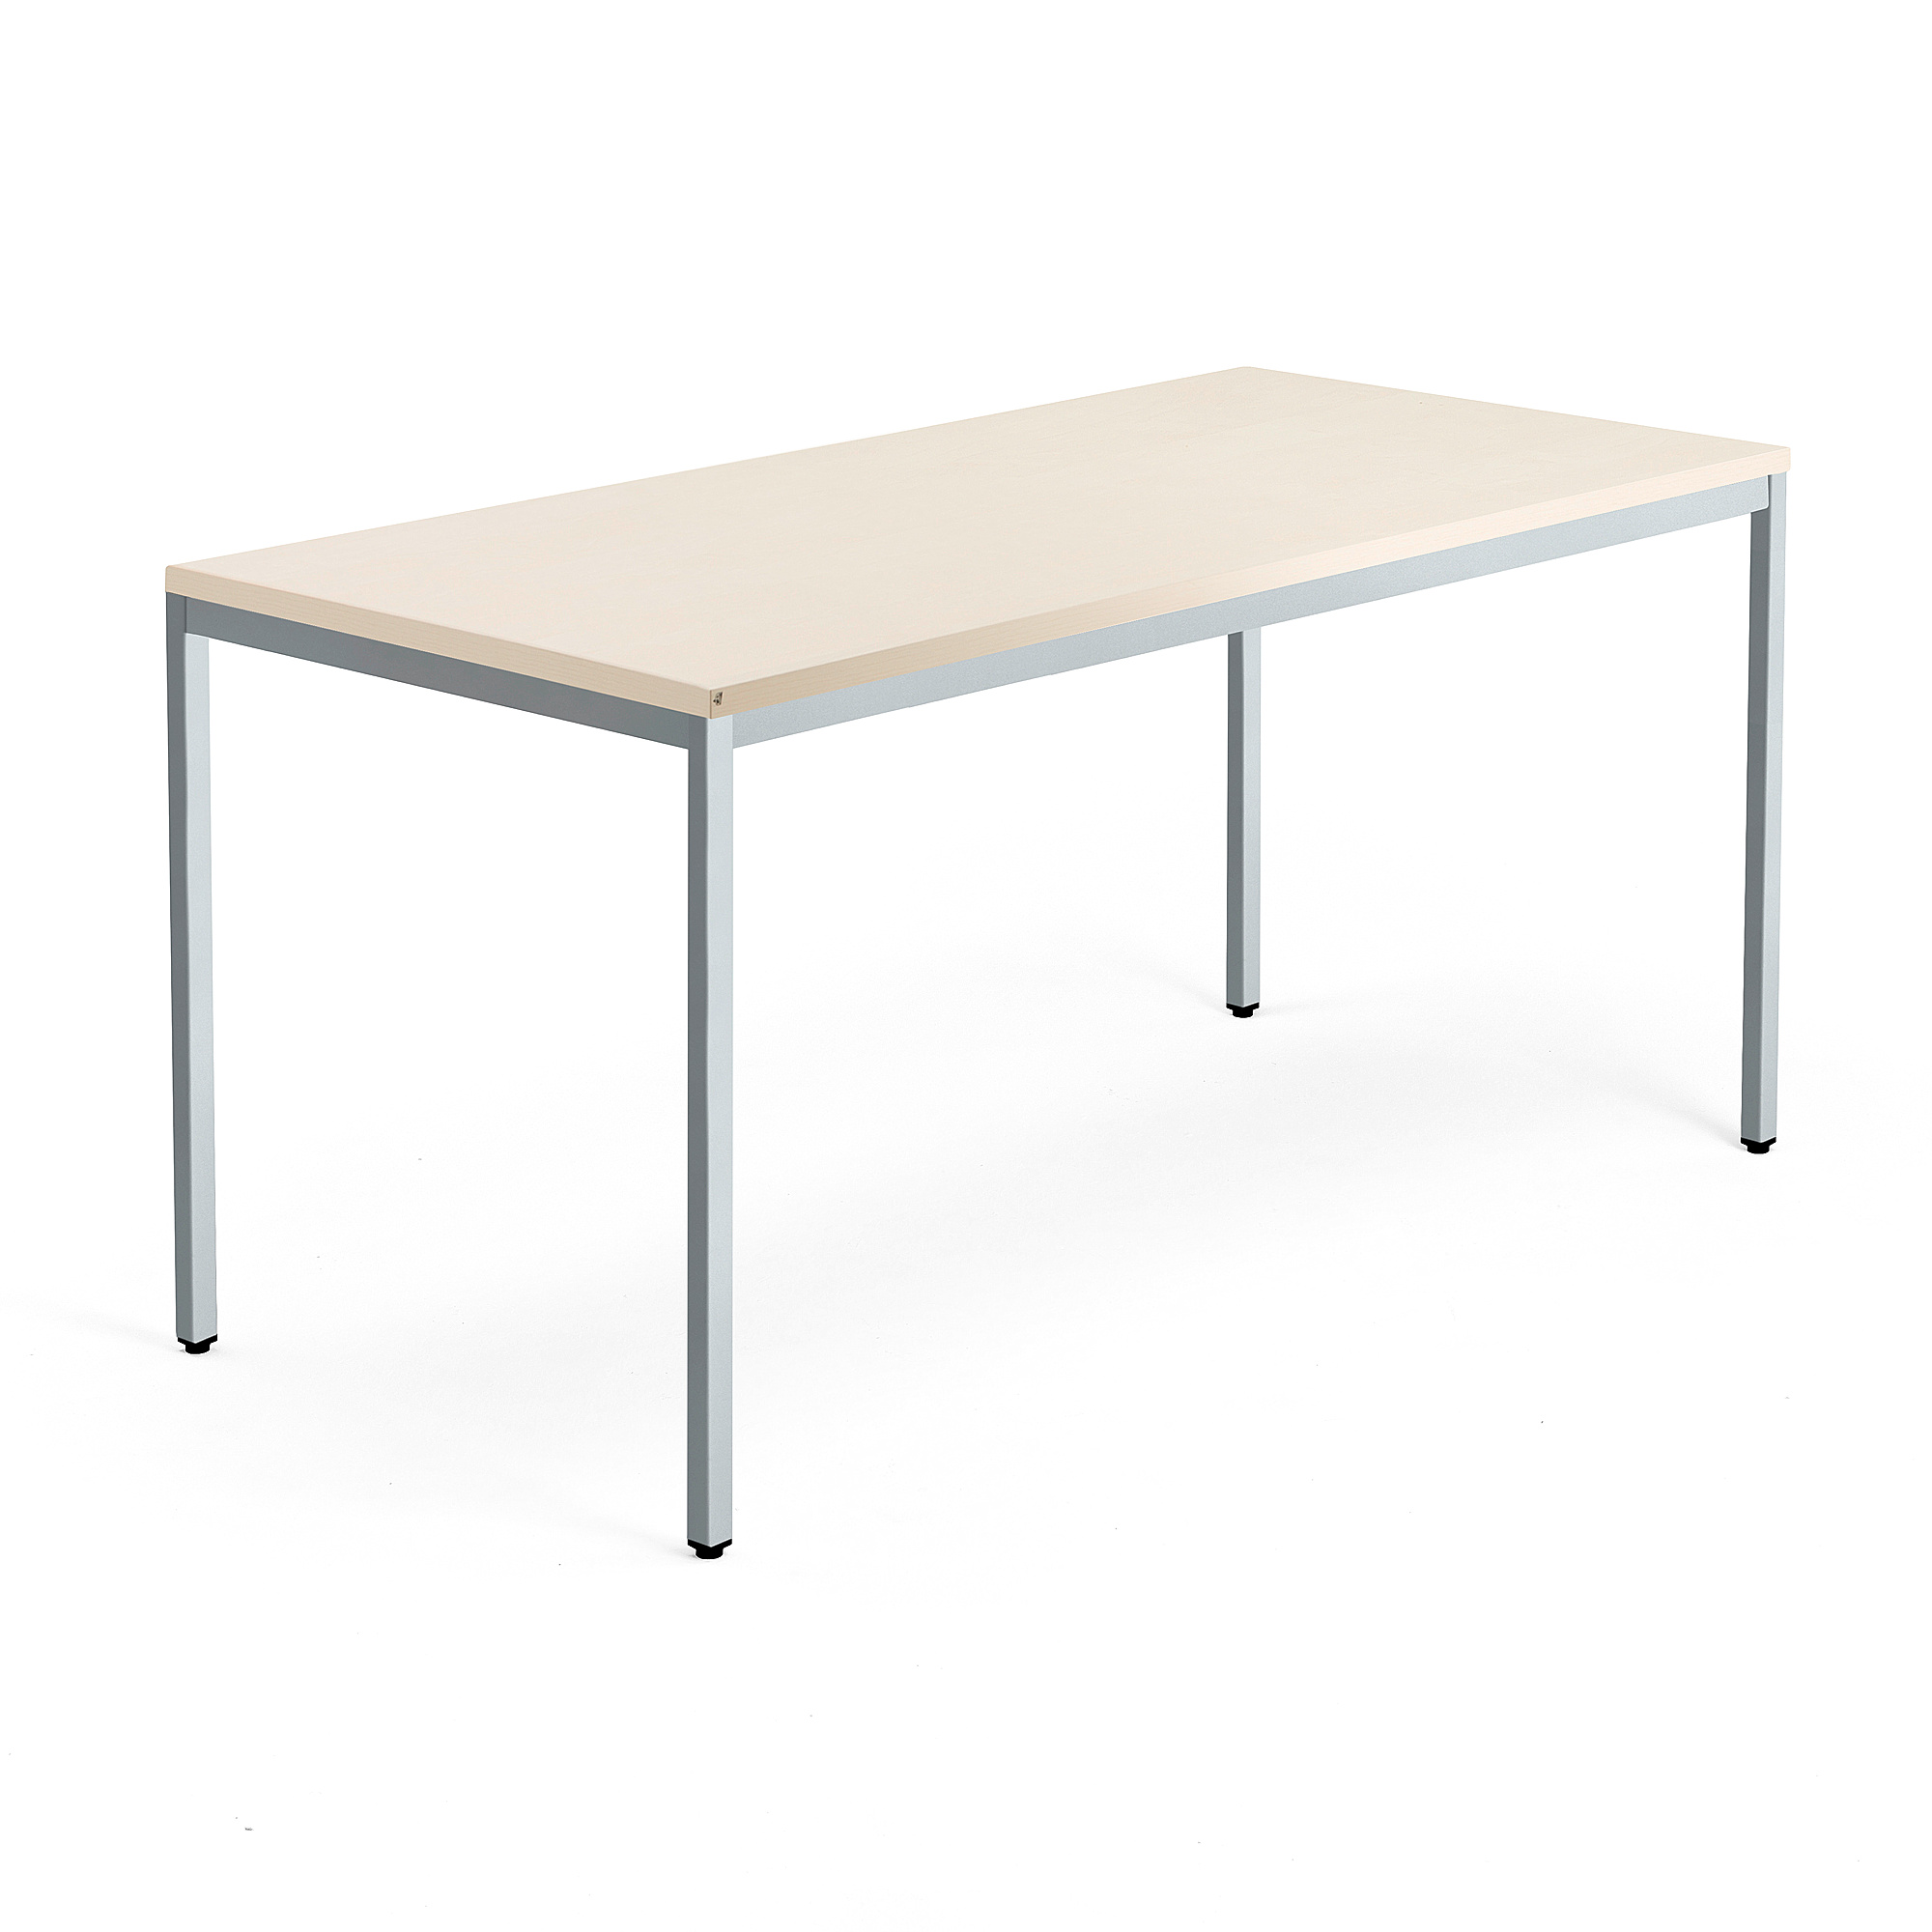 Psací stůl QBUS, 4 nohy, 1600x800 mm, stříbrný rám, bříza